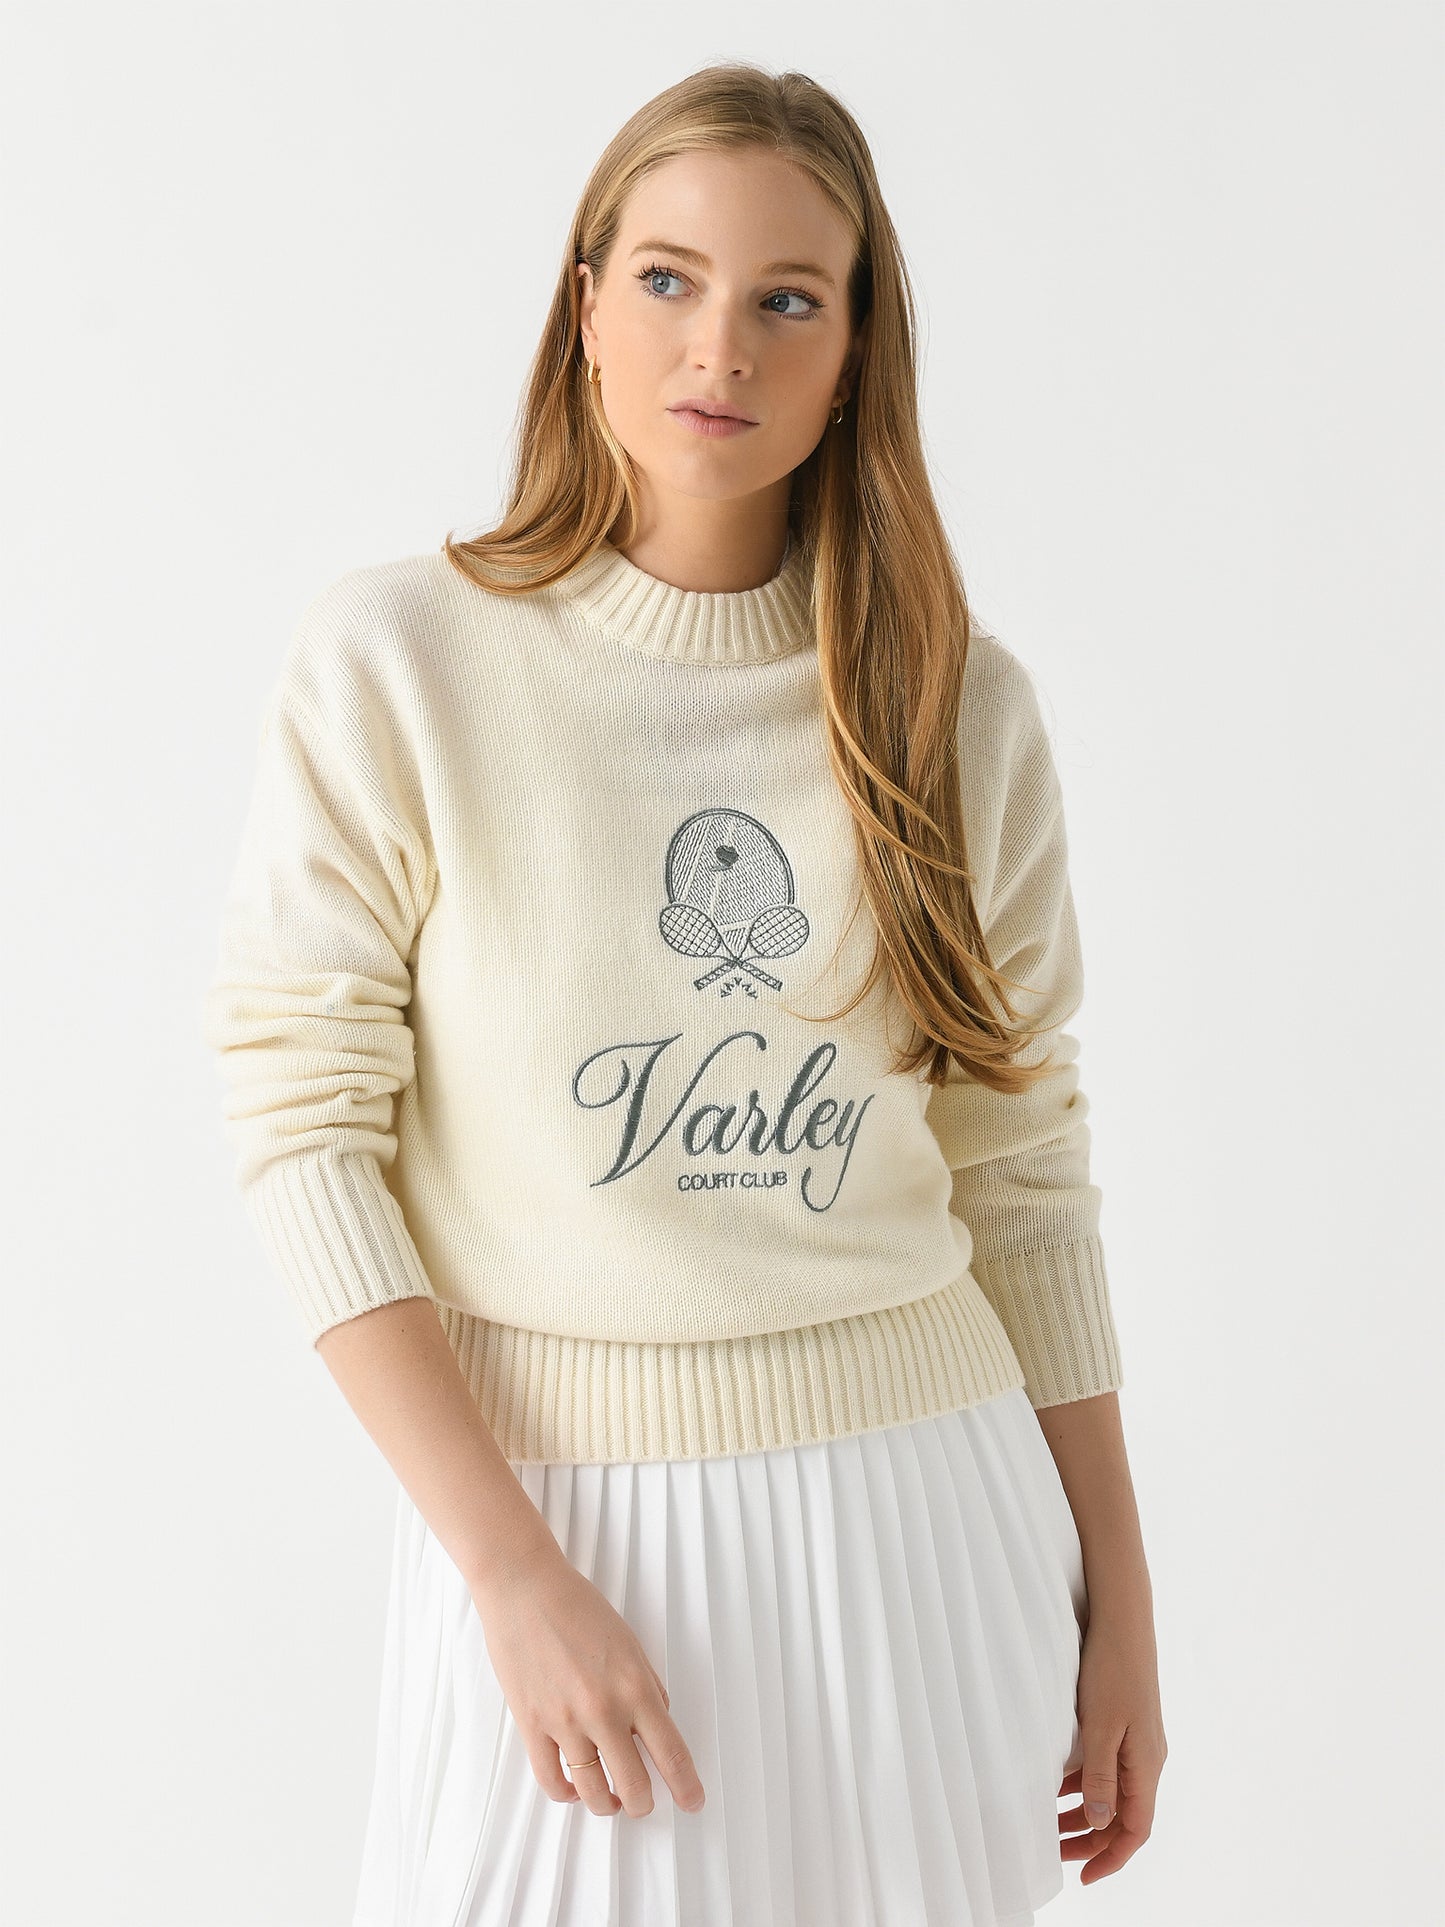 Varley Women's Edie Namesake Knit Sweater